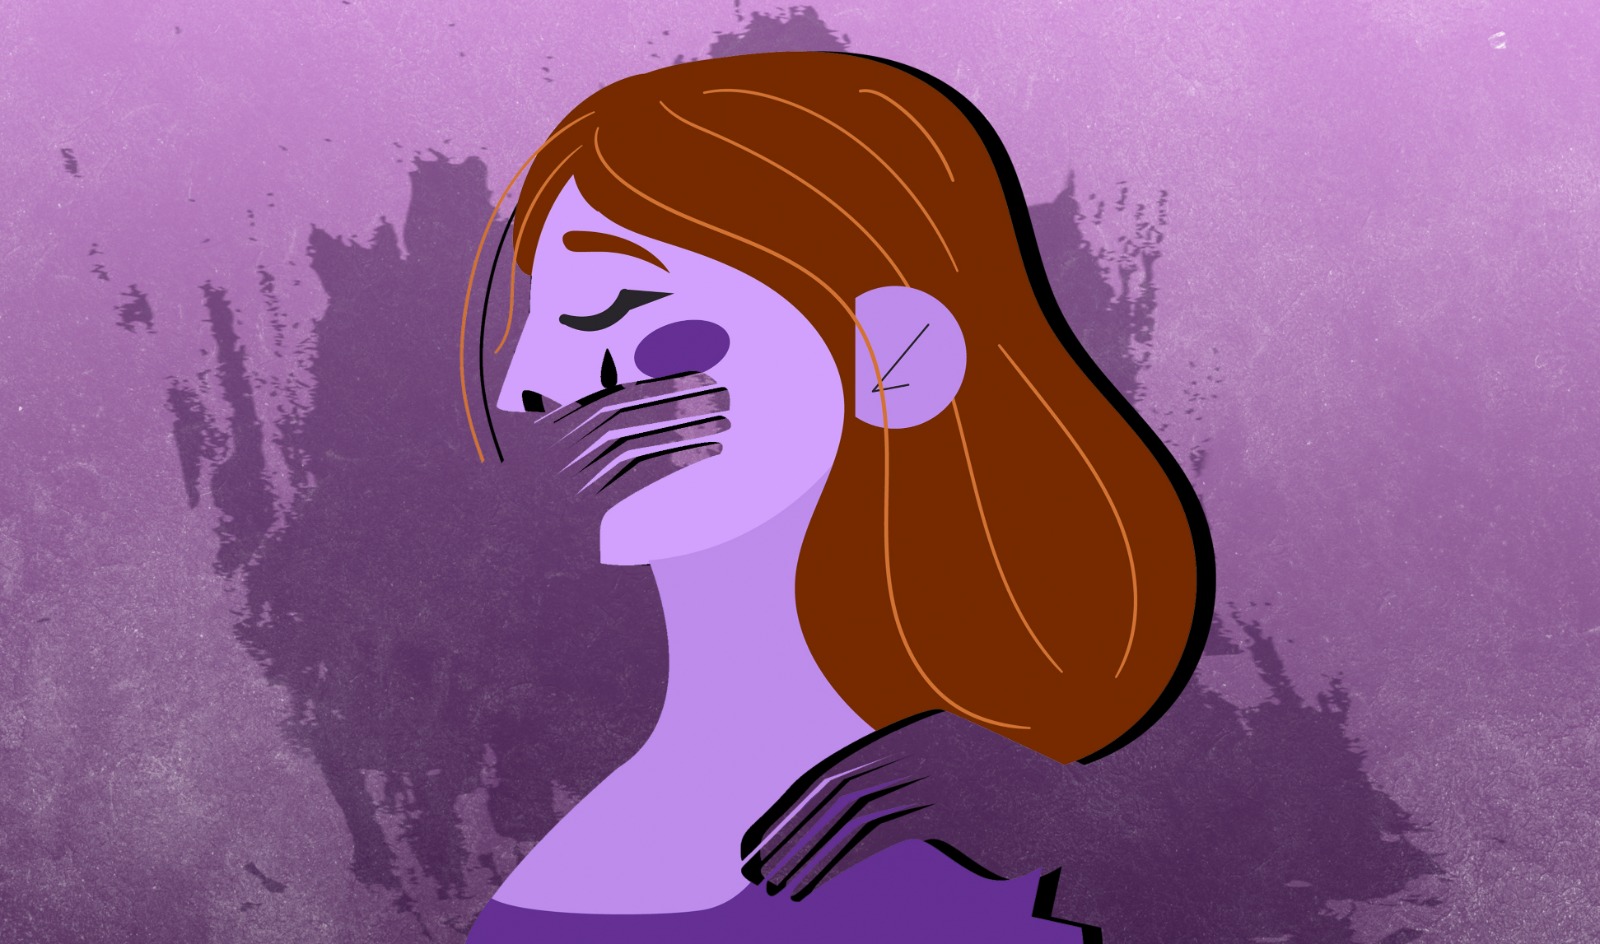 La violencia de género sale del silencio: aumentan denuncias por agresiones en el hogar y violaciones